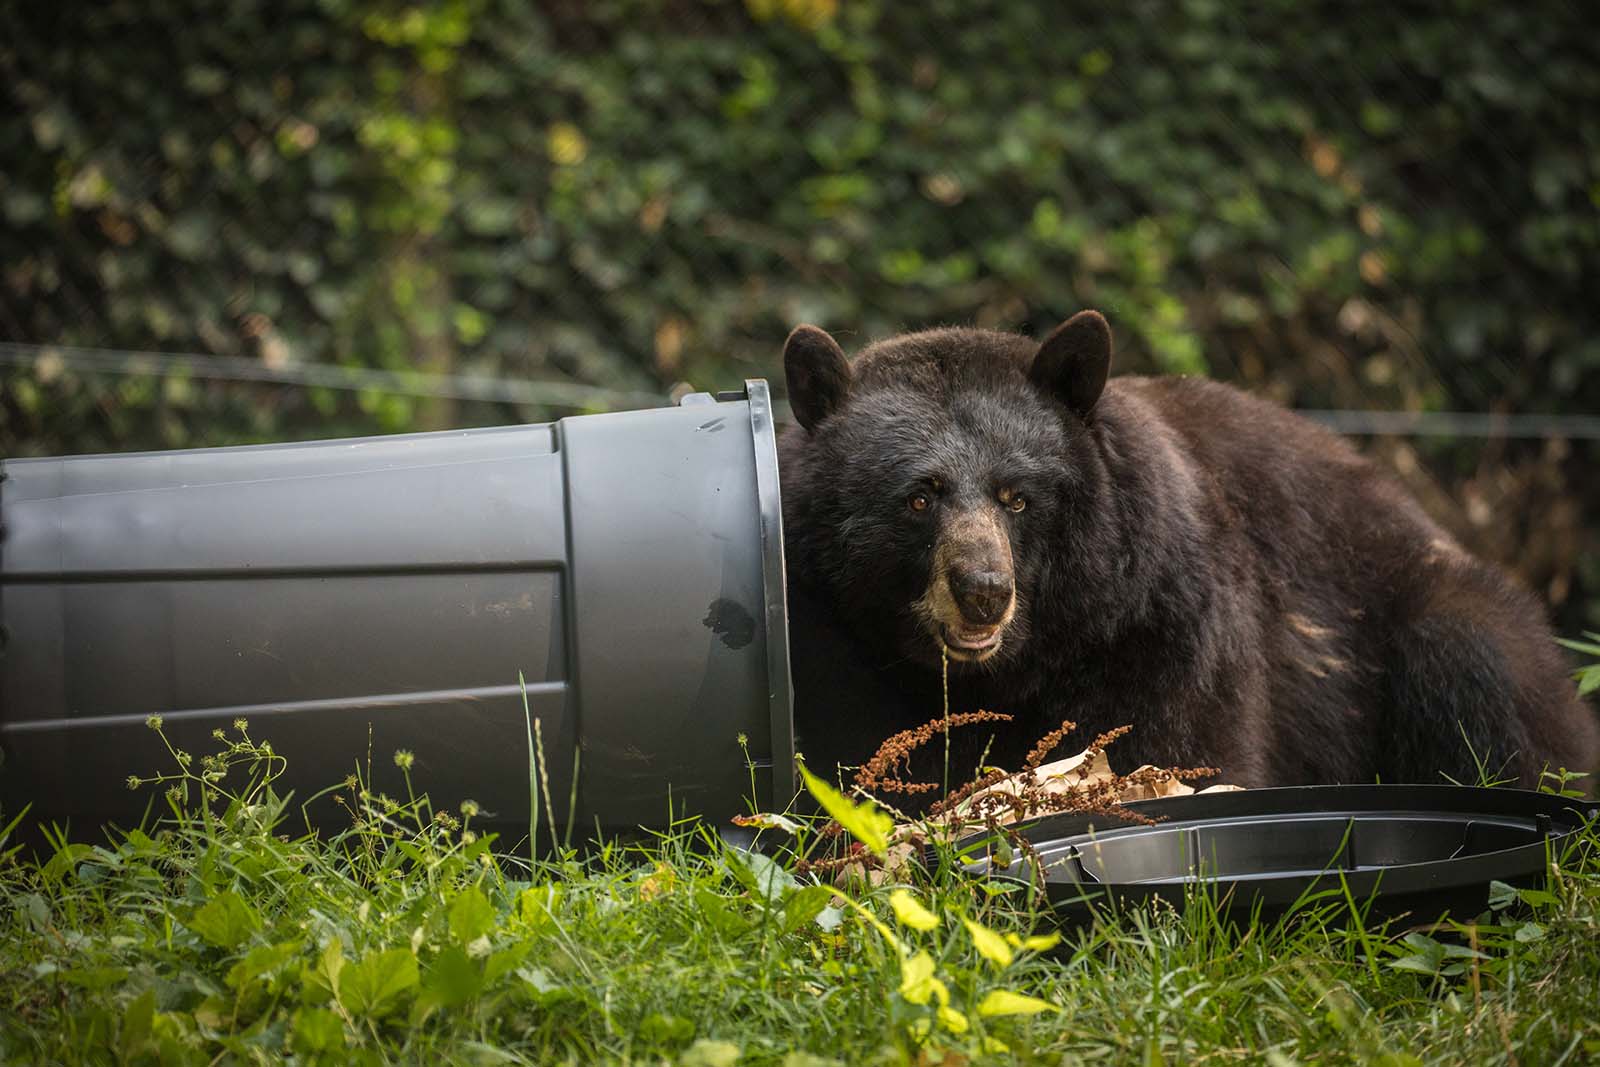 A black bear rummaging through a trash can